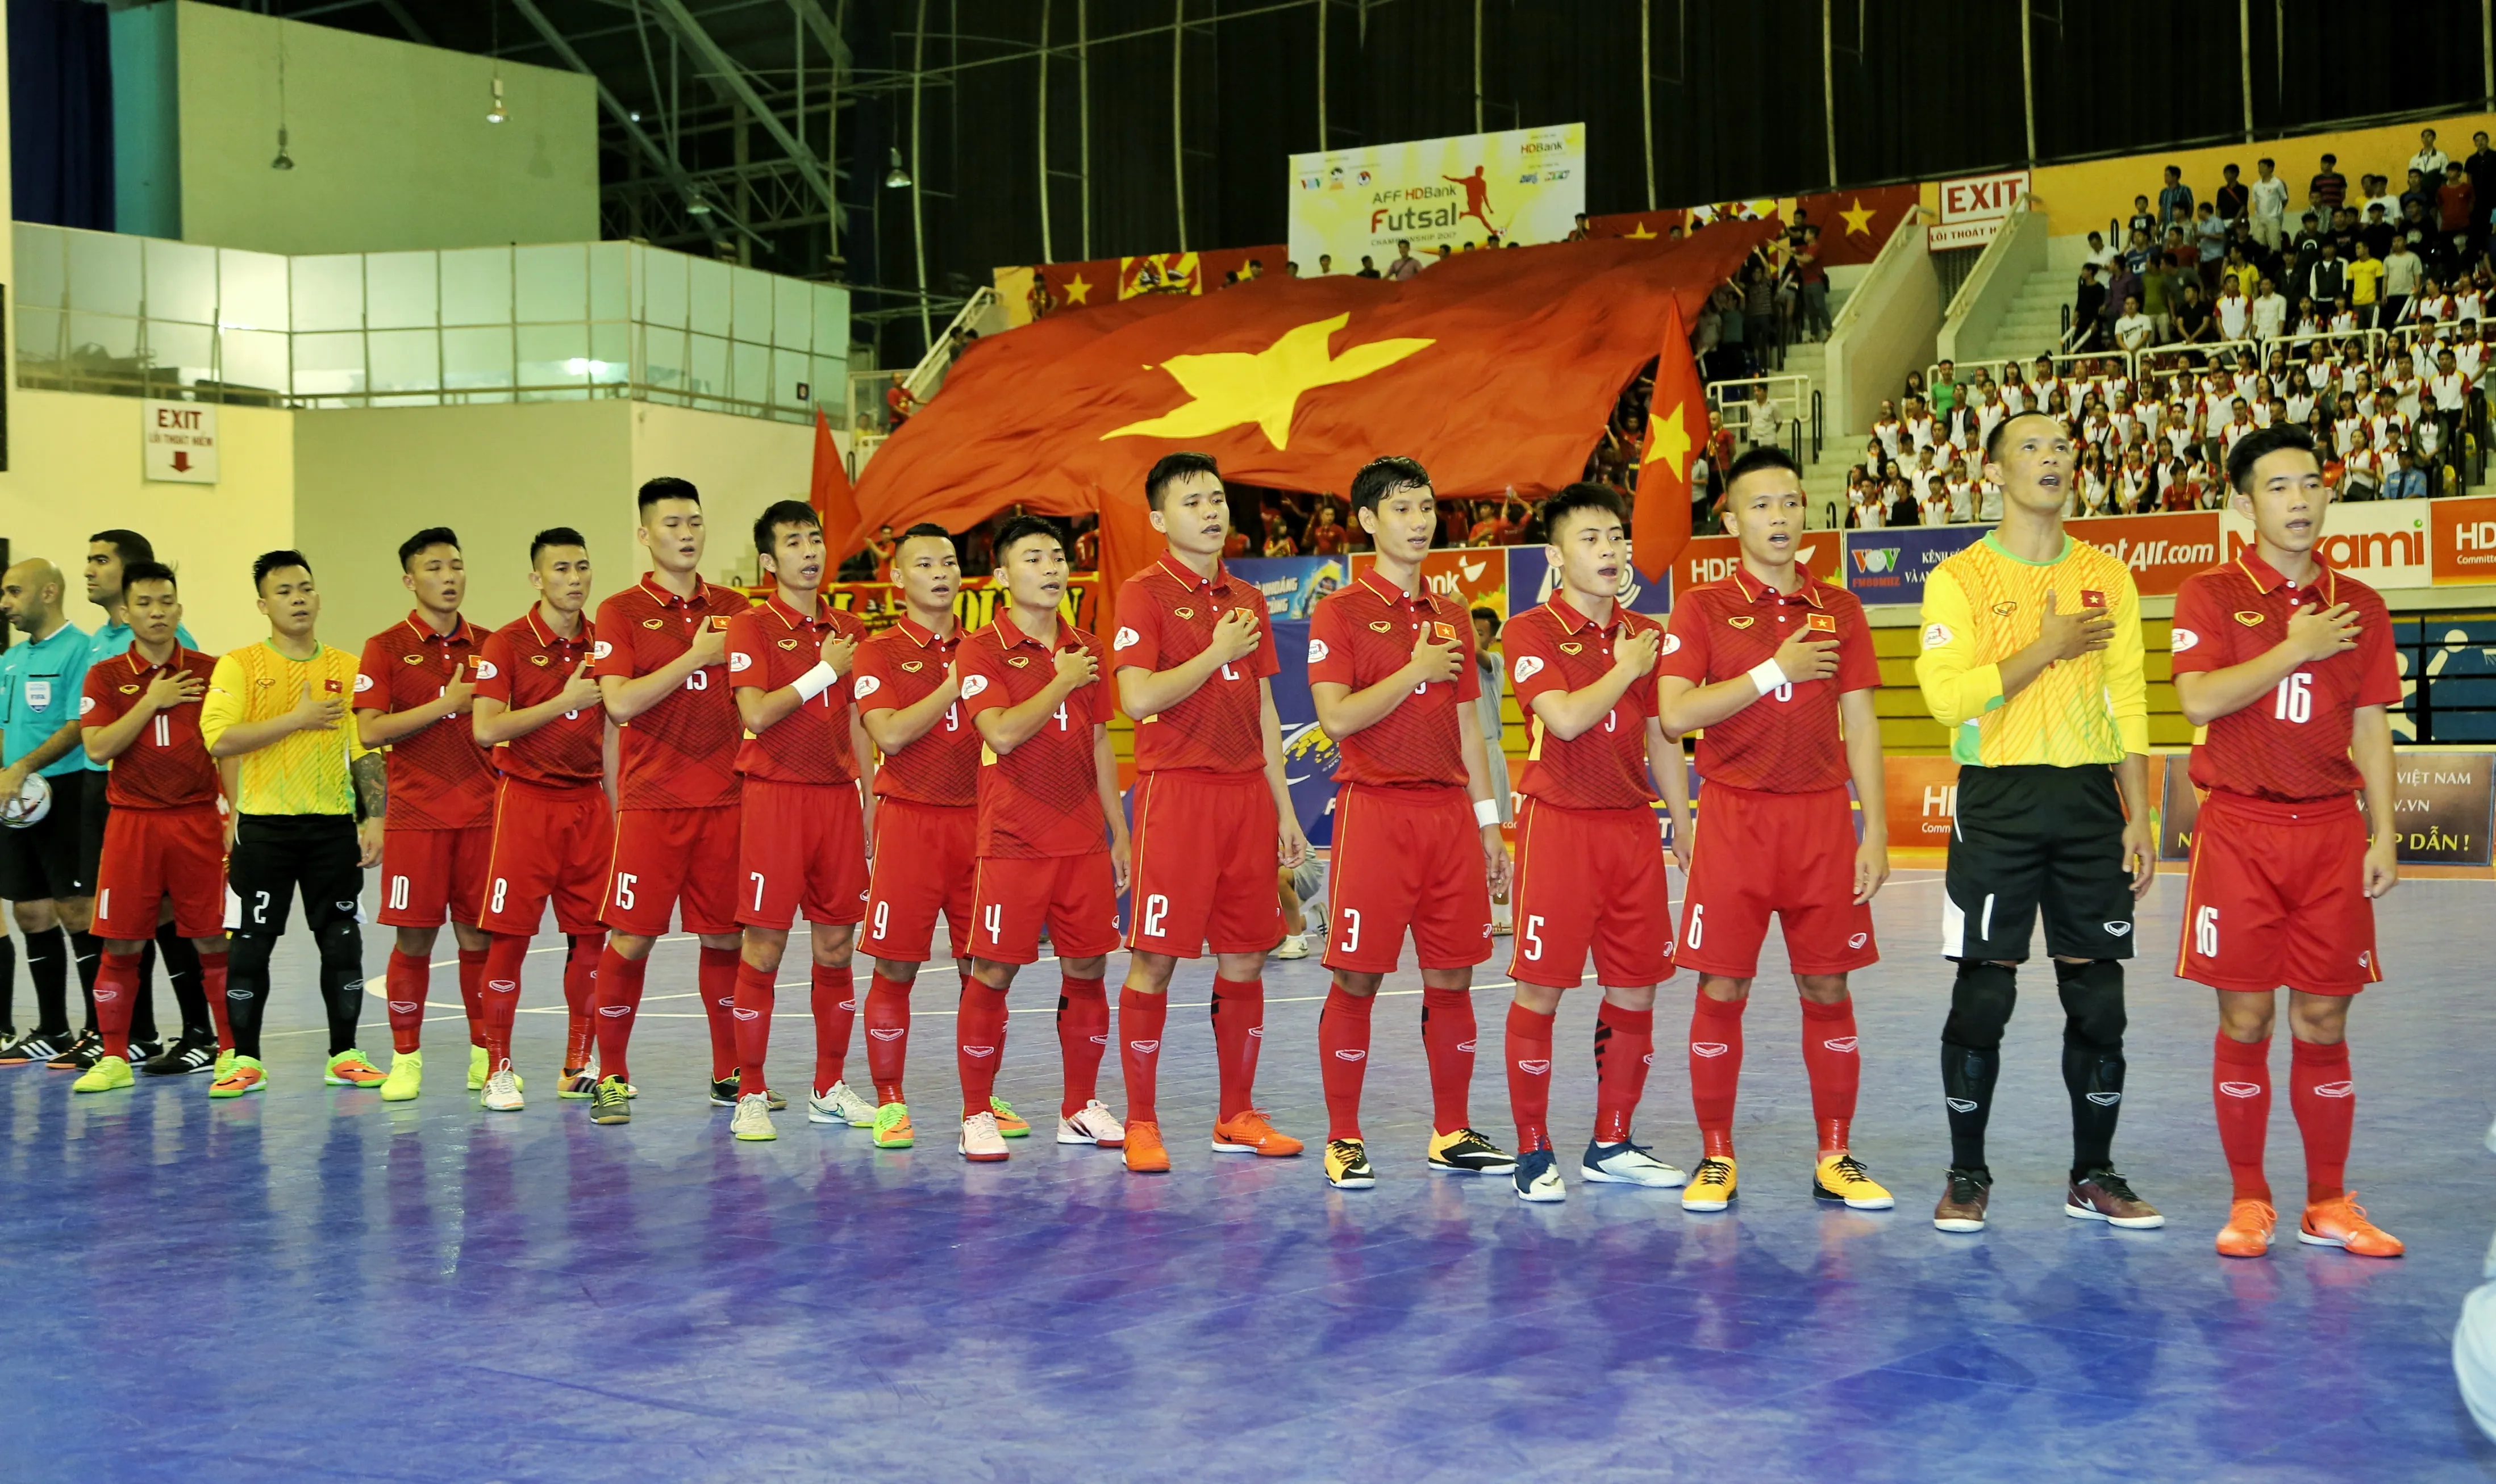 Chốt danh sách 20 tuyển thủ, Futsal Việt Nam hướng đến VCK châu Á 2018 - Bóng Đá